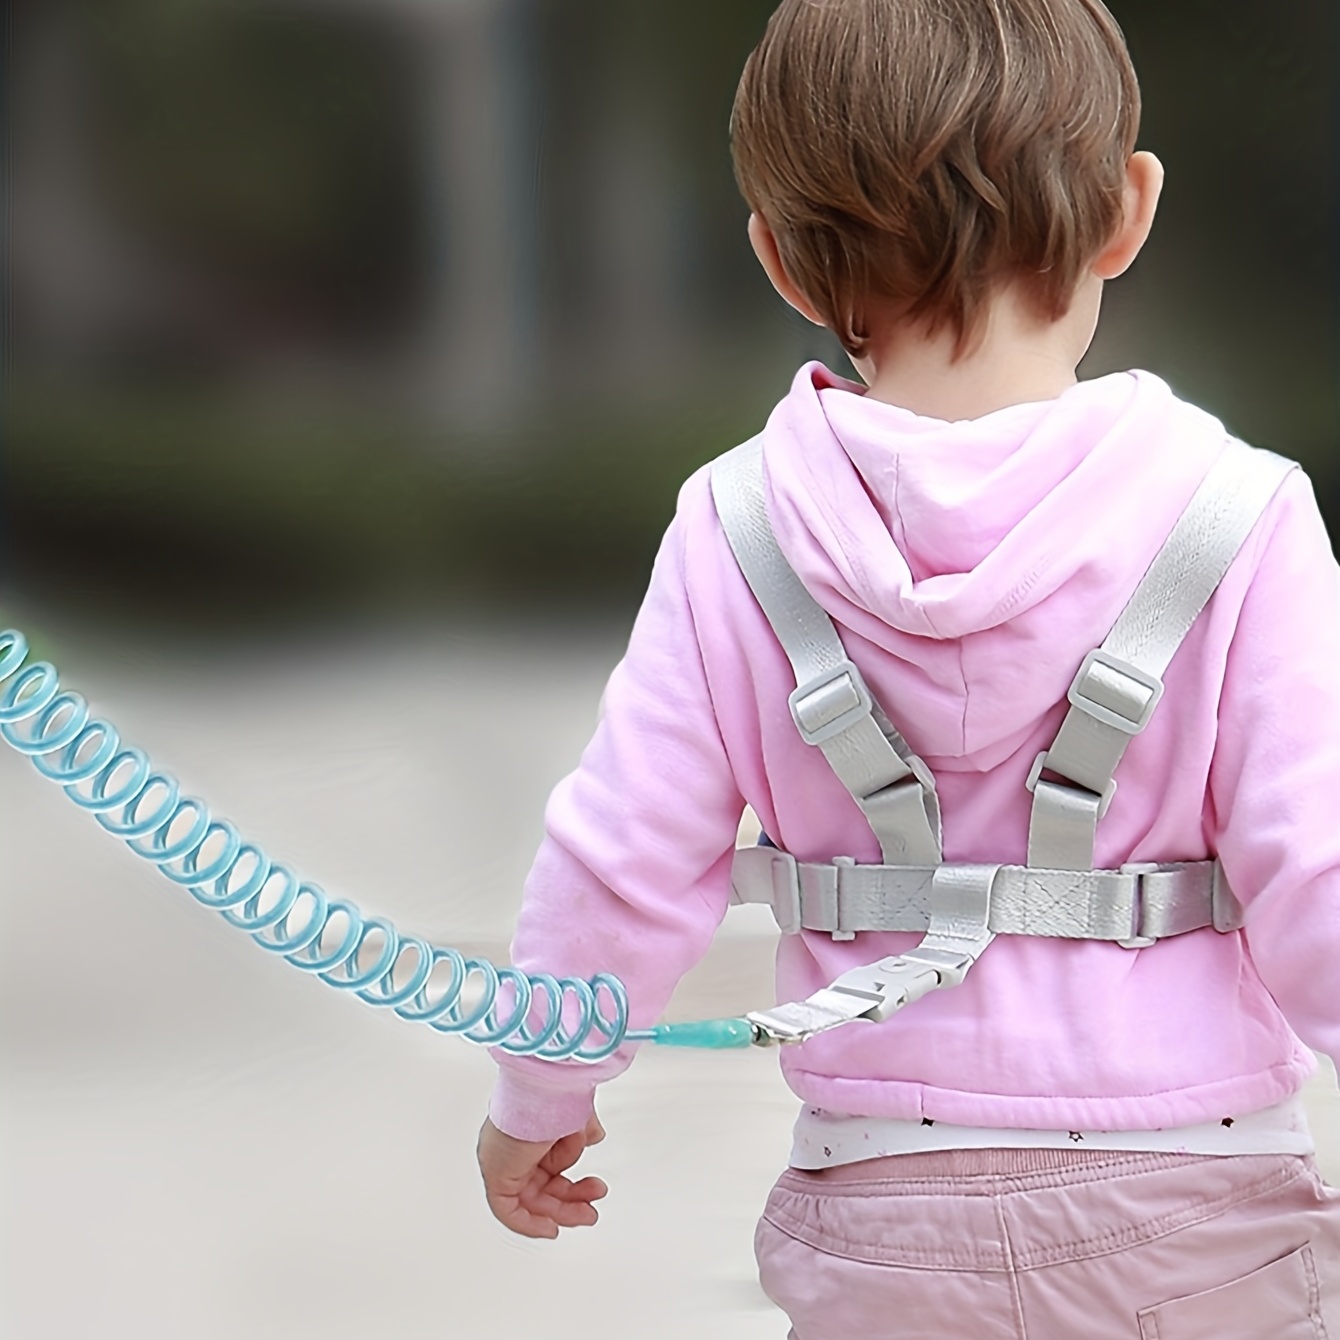 Acheter Enfants enfants Anti perte harnais laisse dragonne lien bande enfants  enfant en bas âge bébé bracelet de sécurité